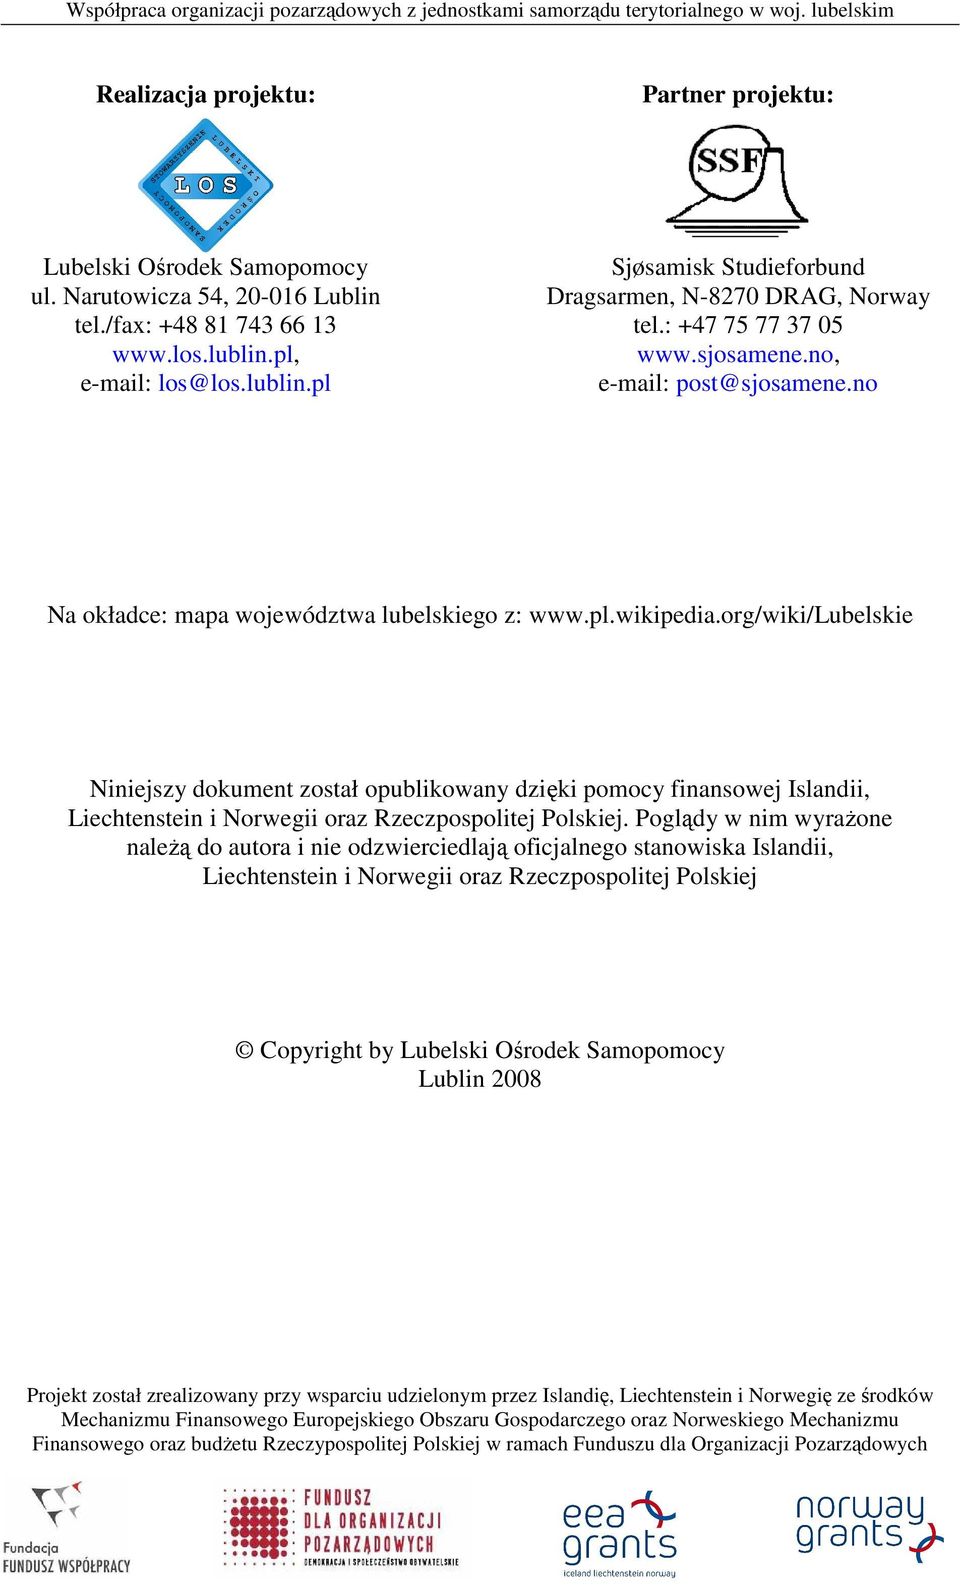 pl.wikipedia.org/wiki/lubelskie Niniejszy dokument został opublikowany dzięki pomocy finansowej Islandii, Liechtenstein i Norwegii oraz Rzeczpospolitej Polskiej.